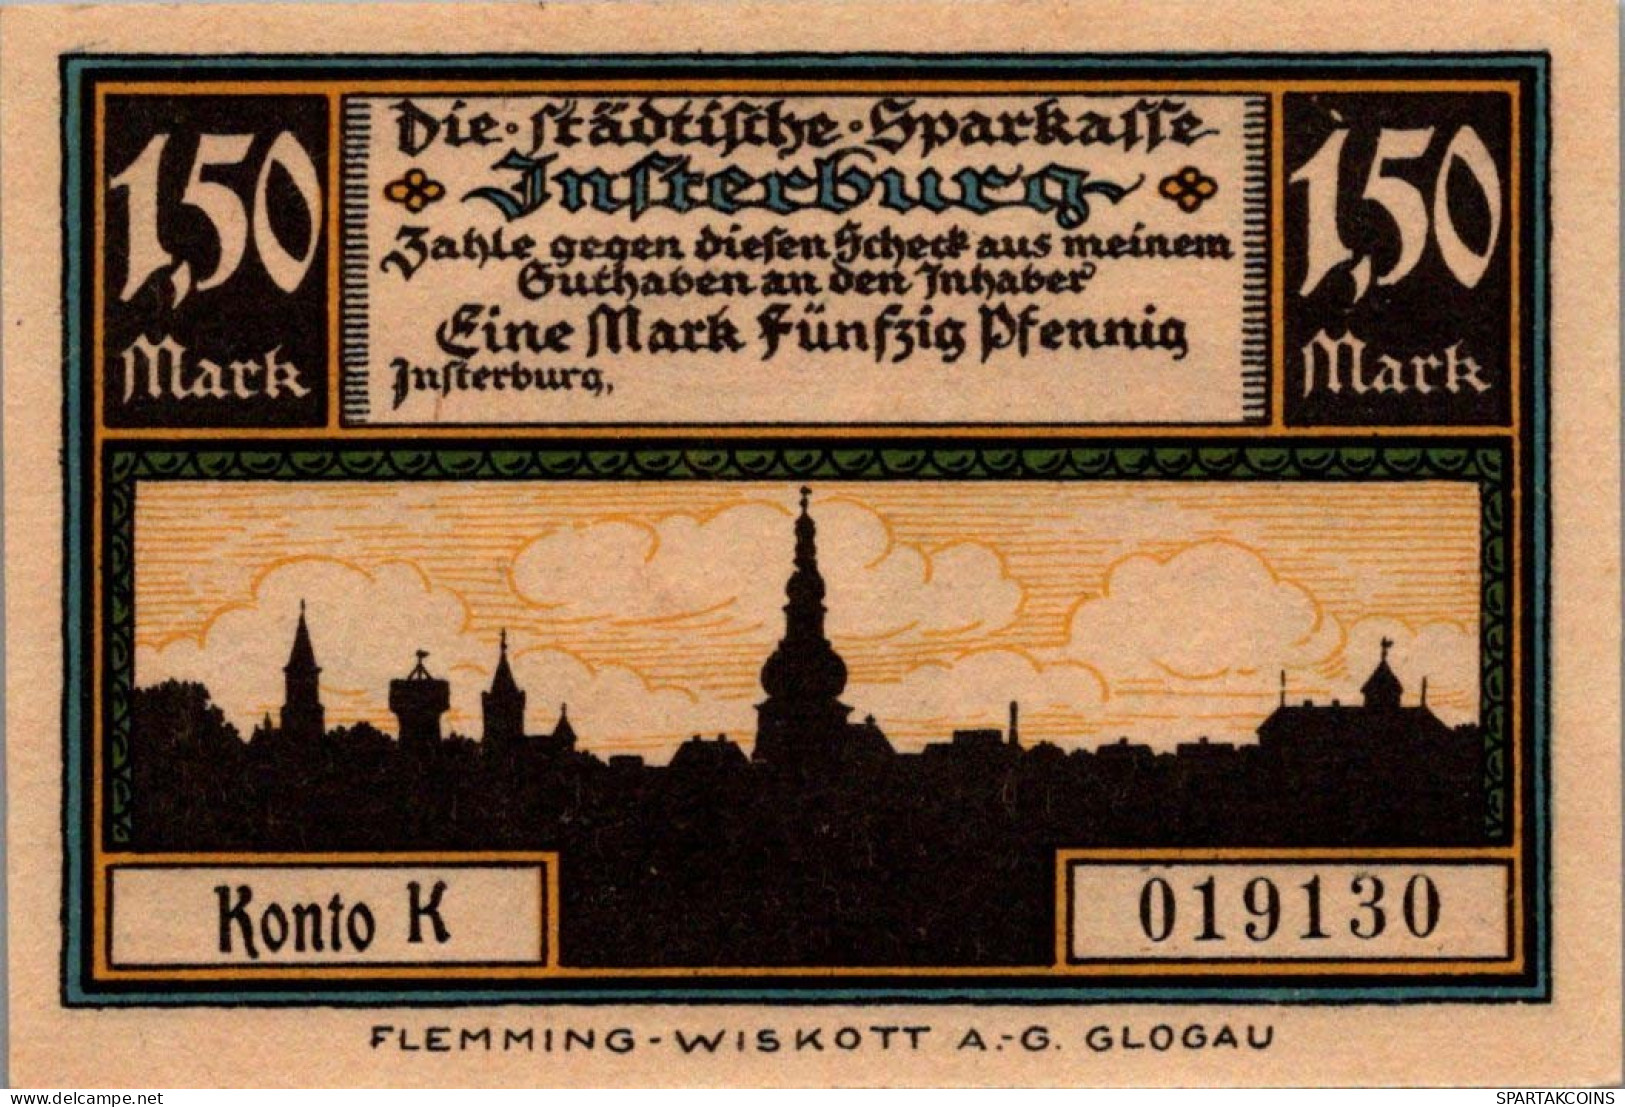 1.5 MARK 1914-1924 Stadt INSTERBURG East PRUSSLAND UNC DEUTSCHLAND Notgeld #PD136 - [11] Emissions Locales